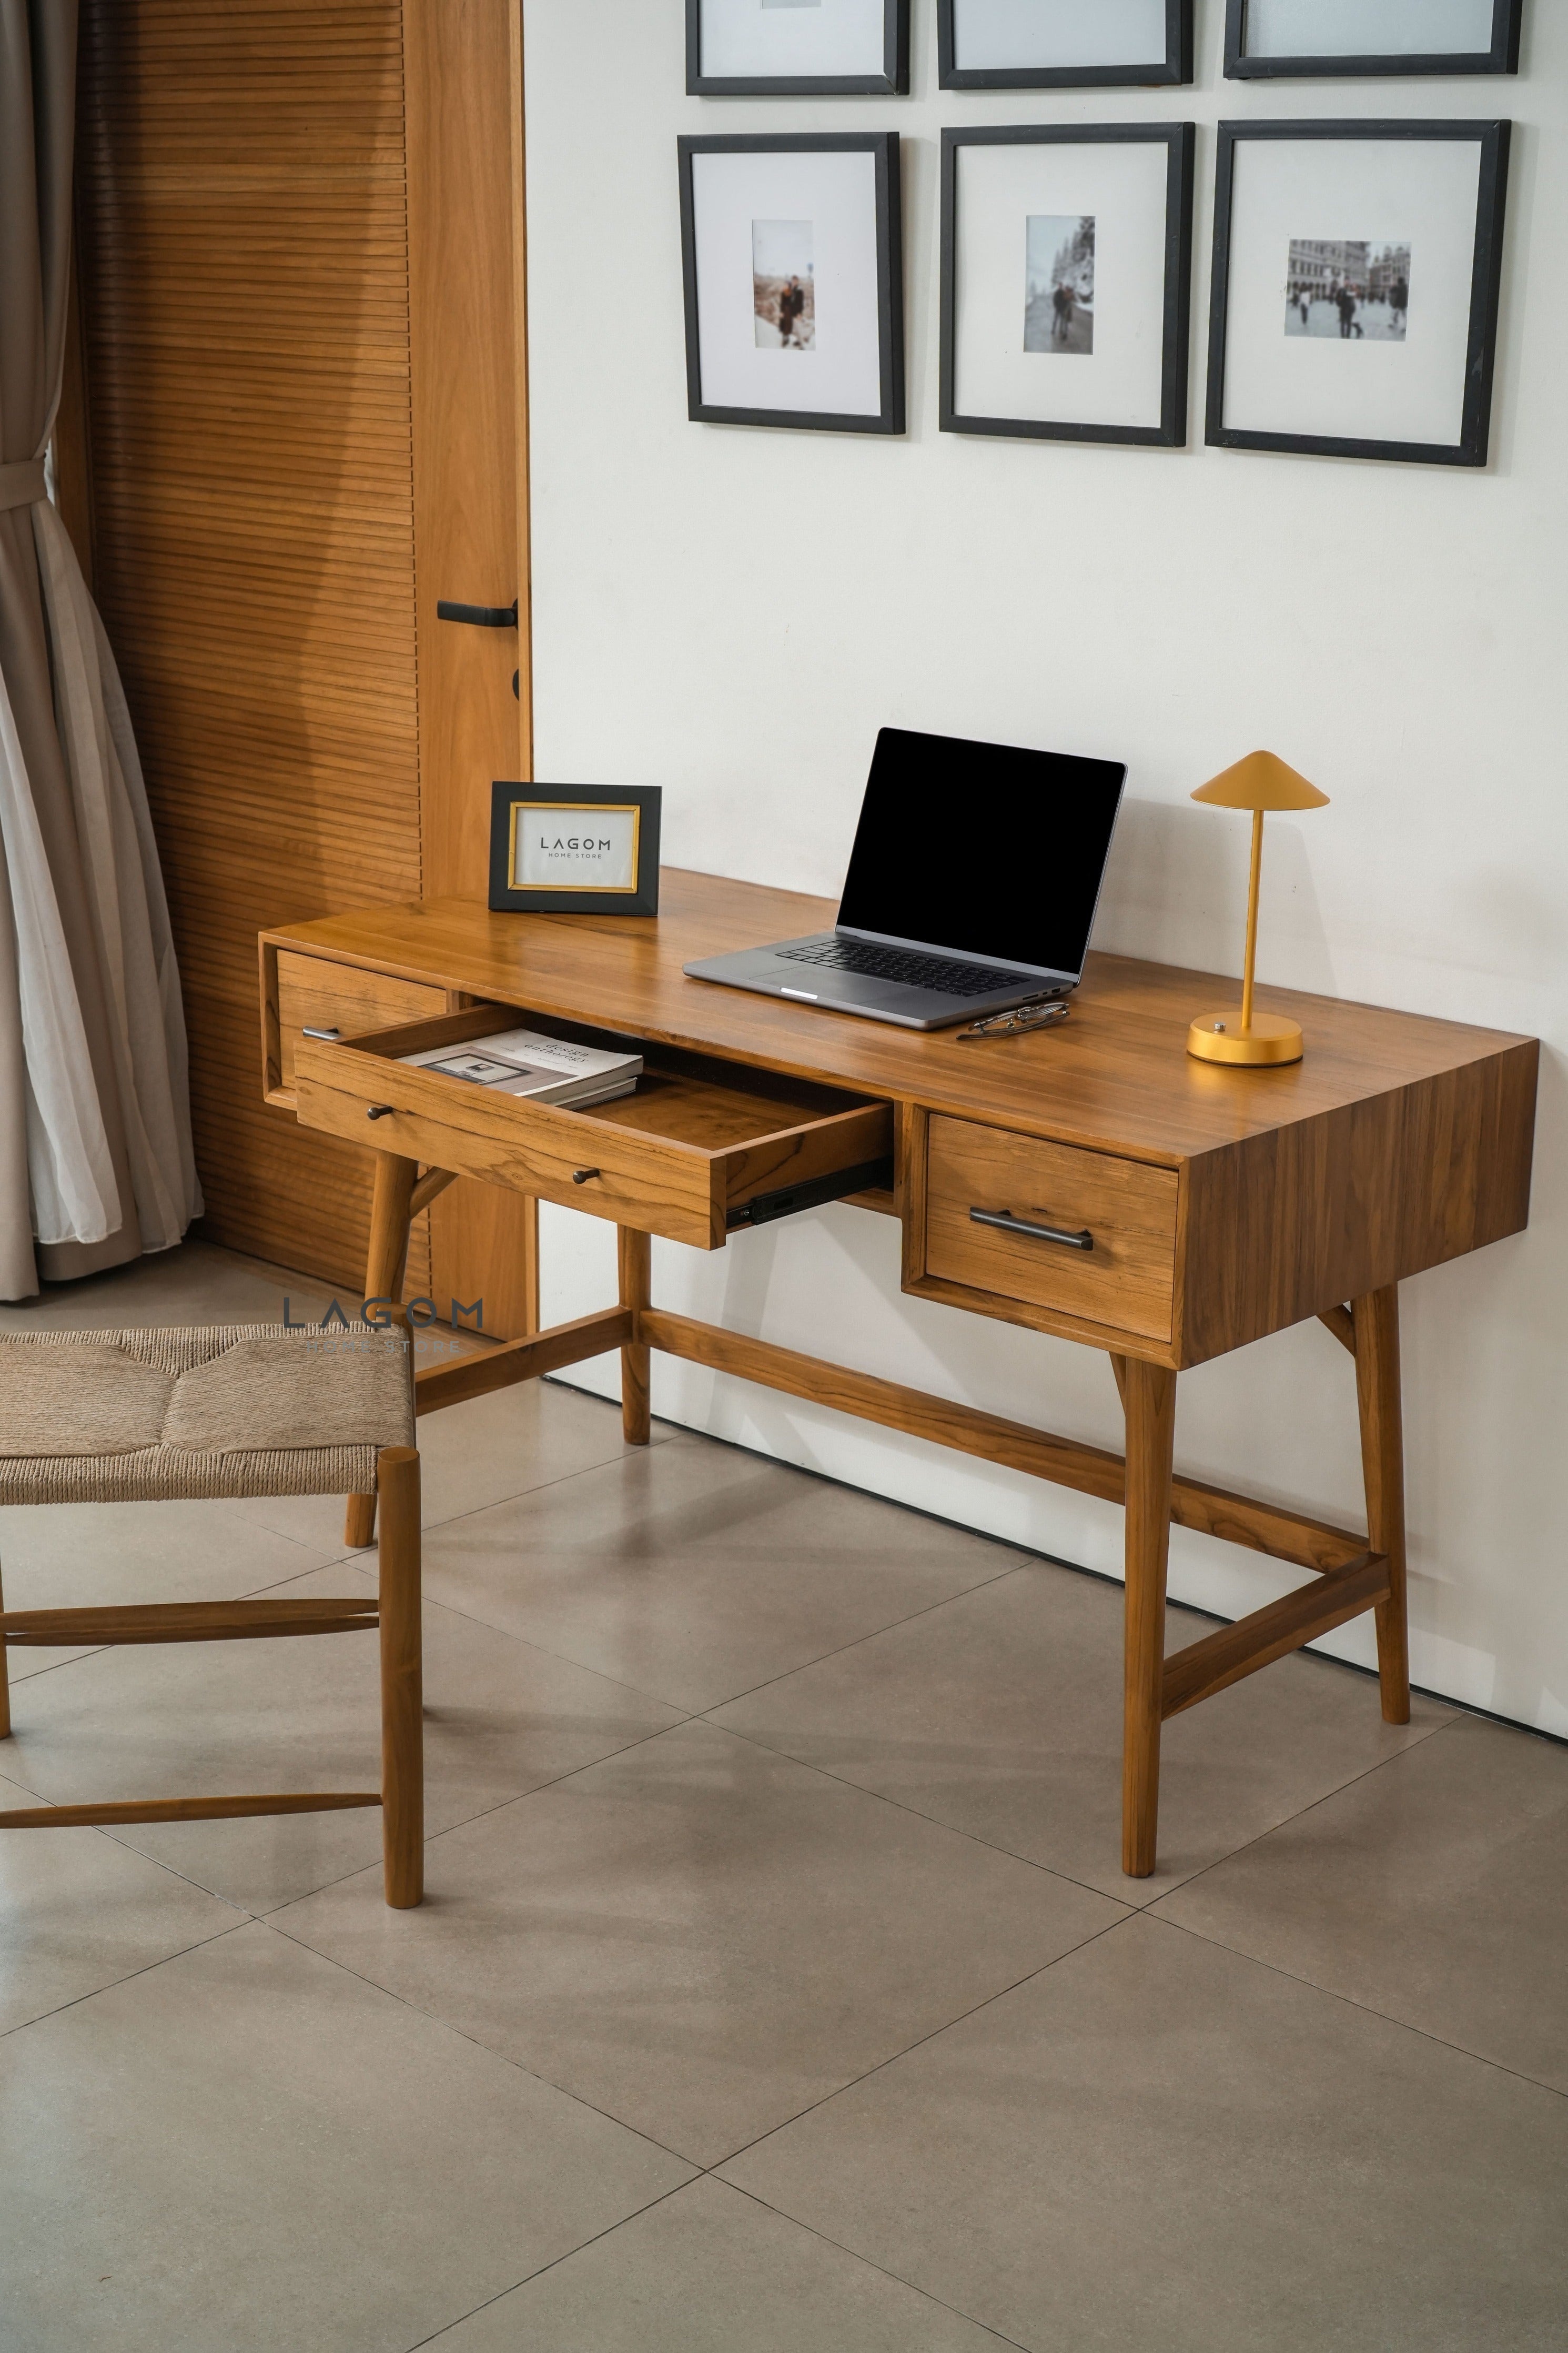 Meja Kerja 3 Laci dari Kayu Jati Solid Desk Lagom Home Store Jati Furnitur Teak Furniture Jakarta